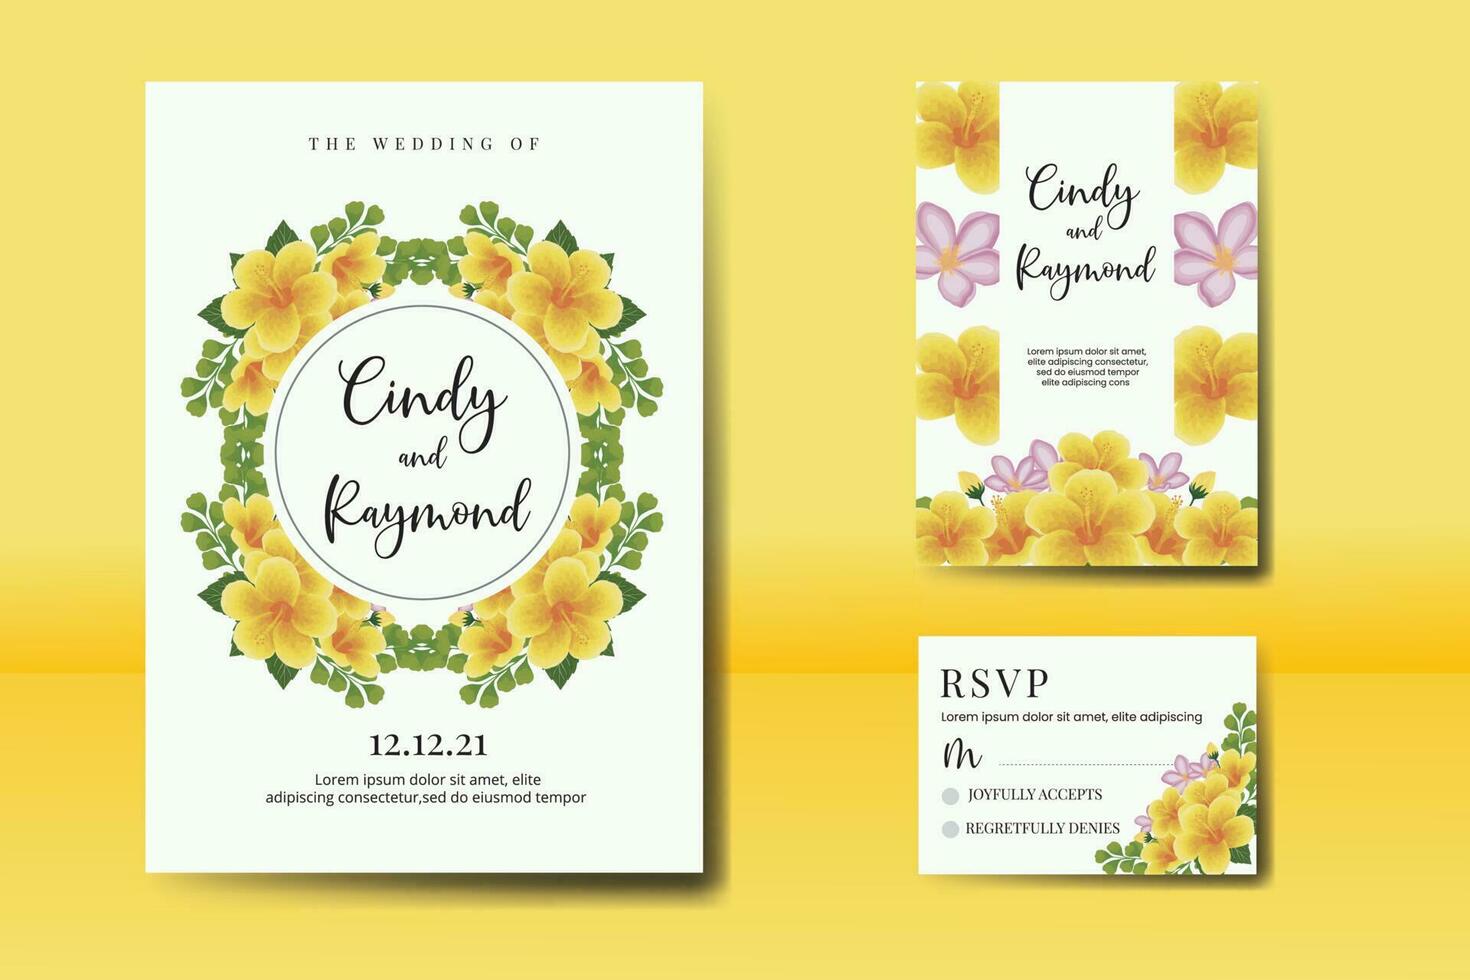 Boda invitación marco colocar, floral acuarela digital mano dibujado amarillo hibisco flor diseño invitación tarjeta modelo vector